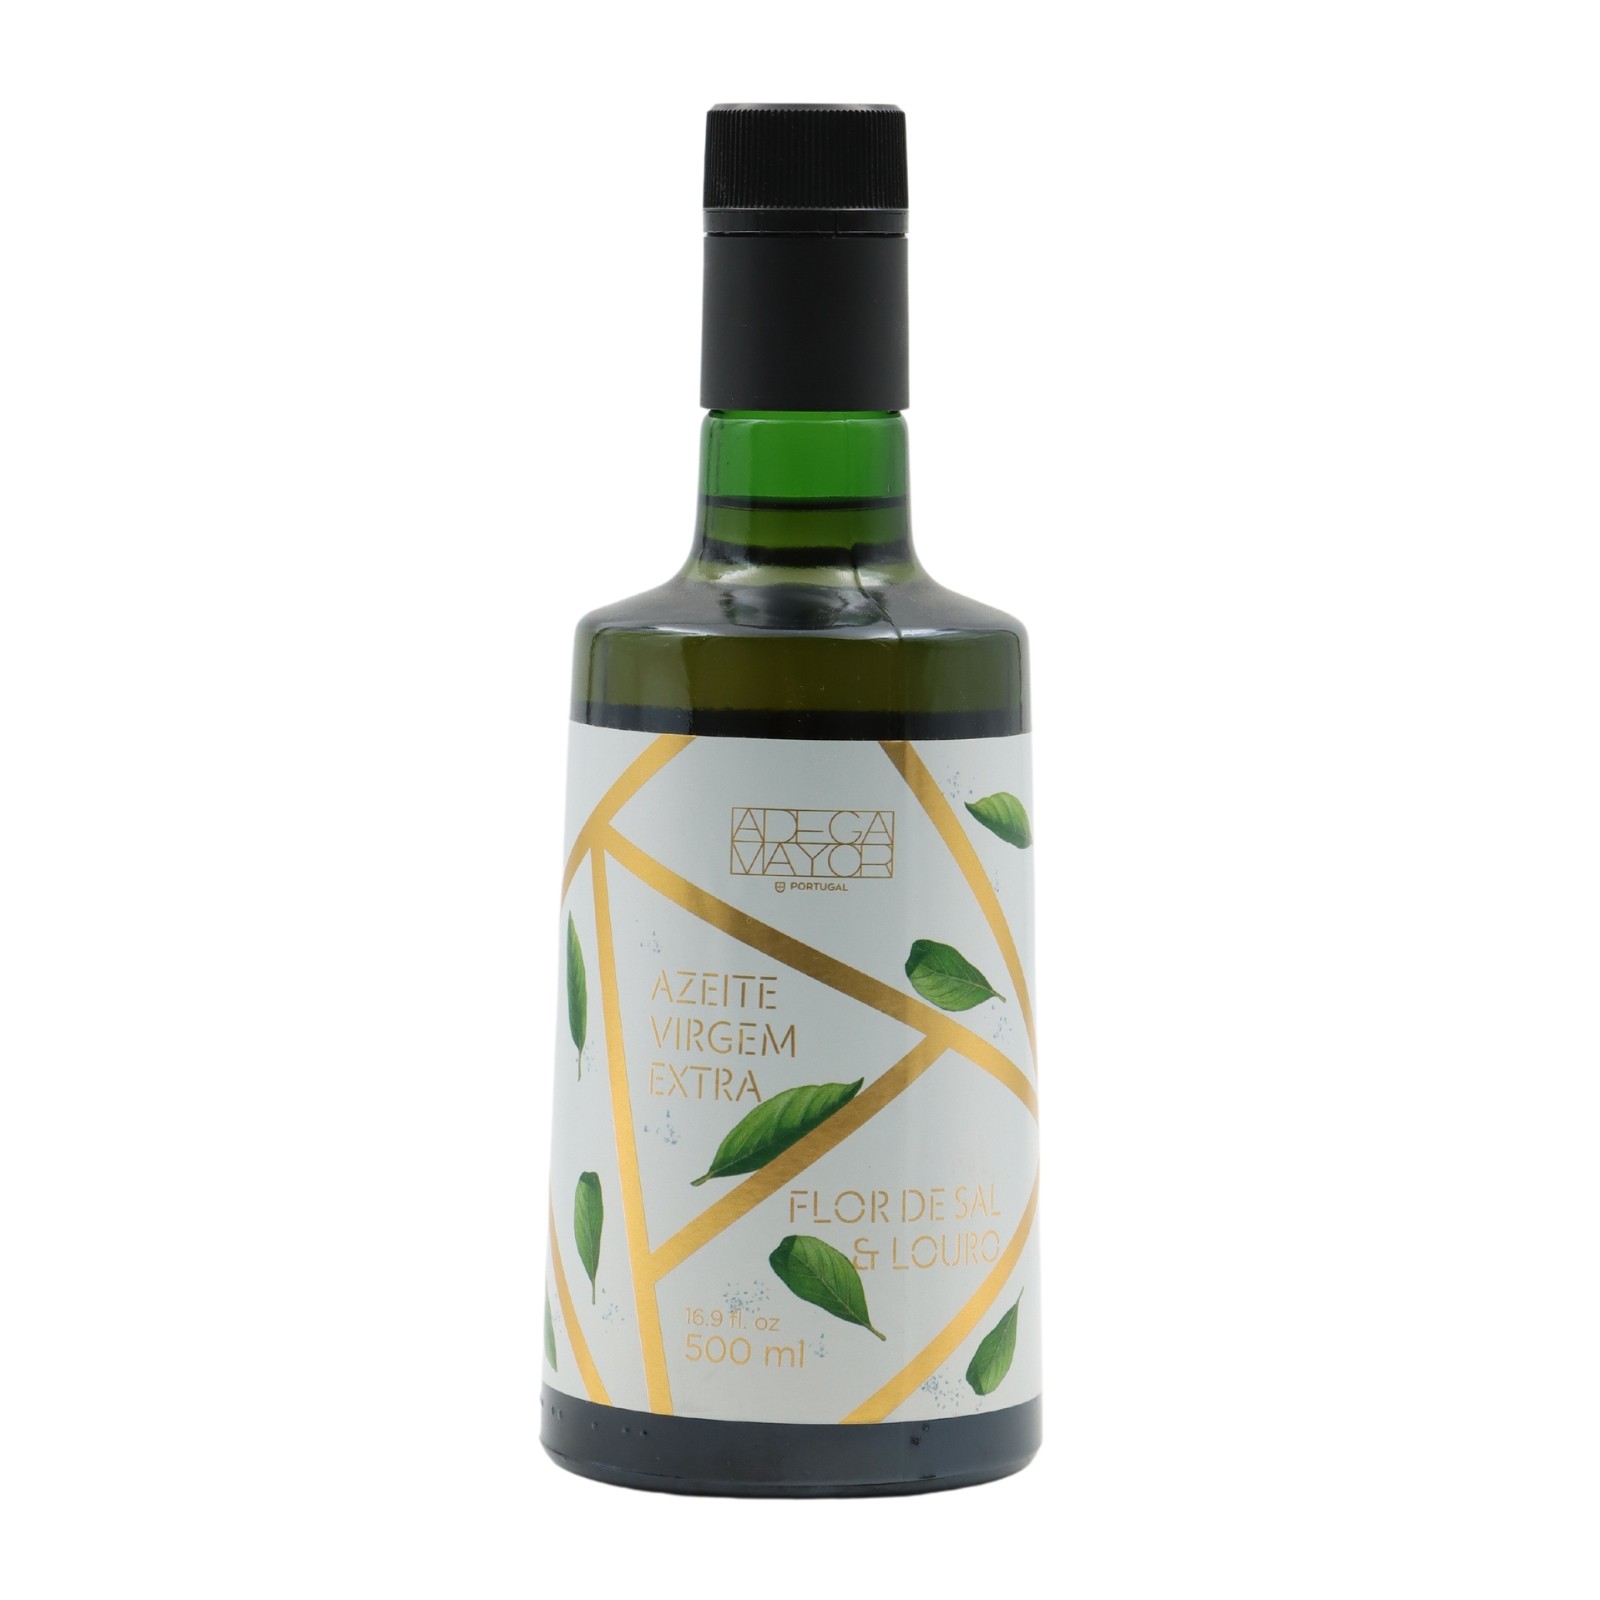 Adega Mayor Aceite de oliva con flor de sal y laurel